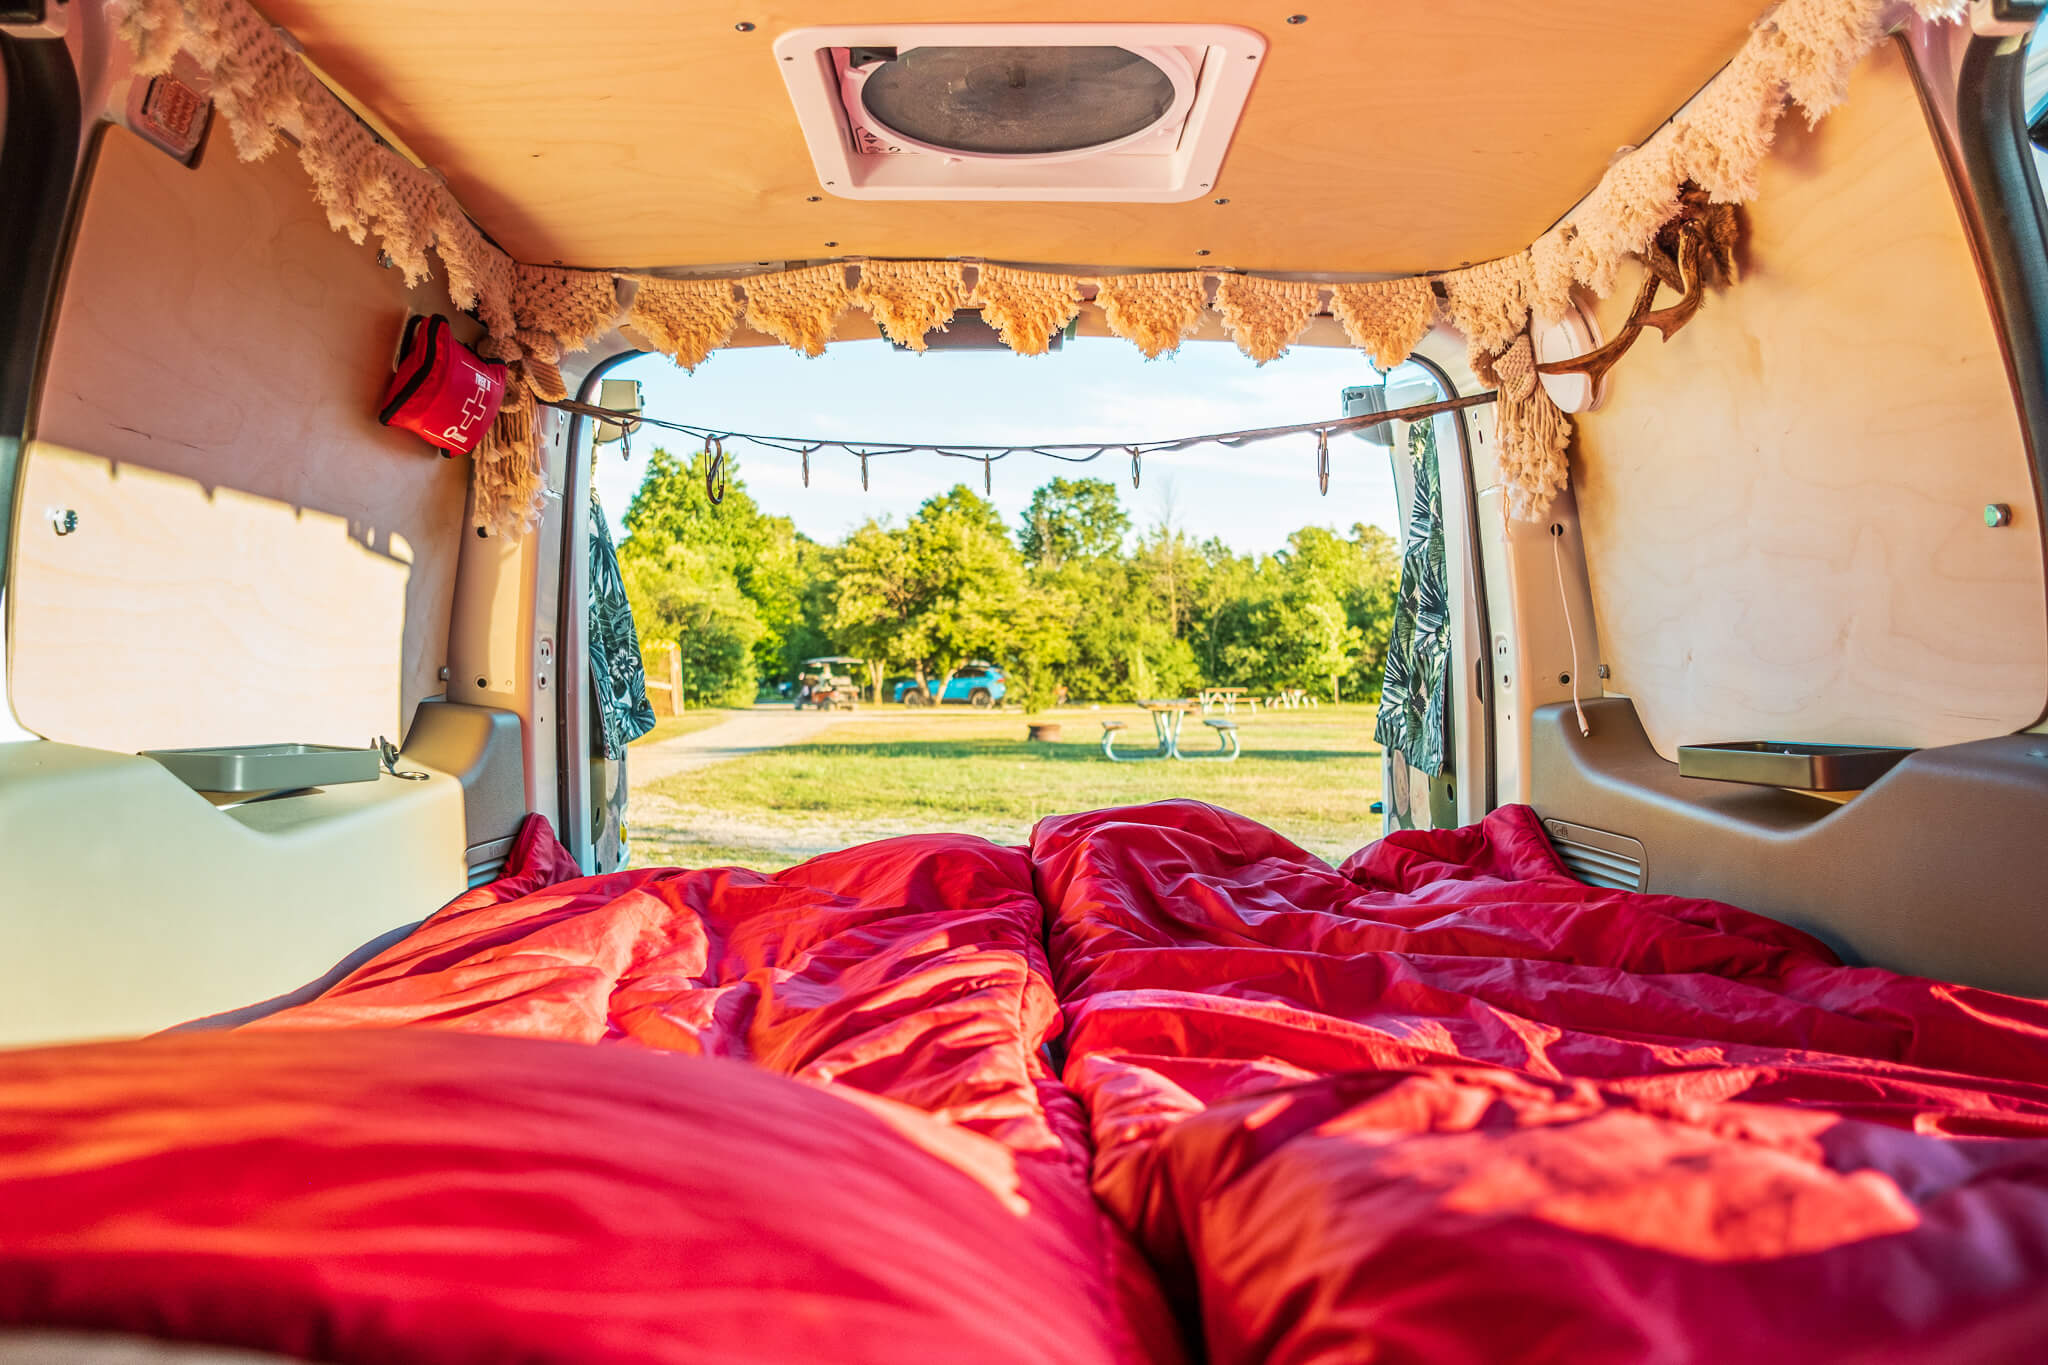 Inside our DIY camper van in sleeping mode